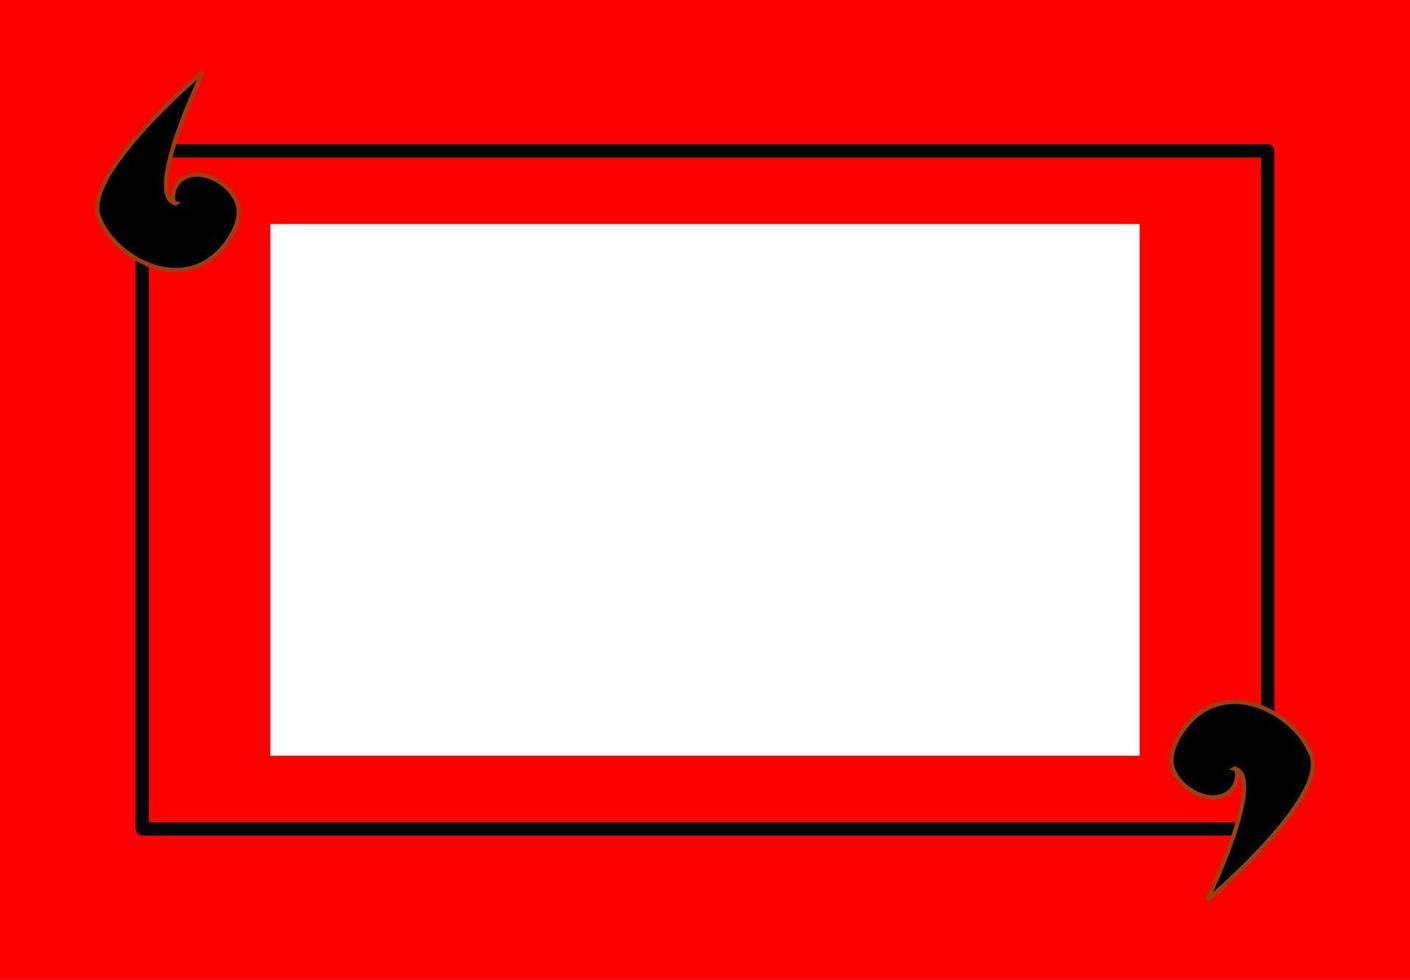 Khung trống ghi chú trích dẫn trên nền đỏ là sự lựa chọn phù hợp nhất cho những người yêu thích phong cách đơn giản mà hiệu quả. Với hộp văn bản cách ly tạo nên sự tách biệt, bạn sẽ có được một không gian làm việc sạch sẽ và ngăn nắp hơn. Hãy xem hình ảnh này và tận dụng cách trang trí này!